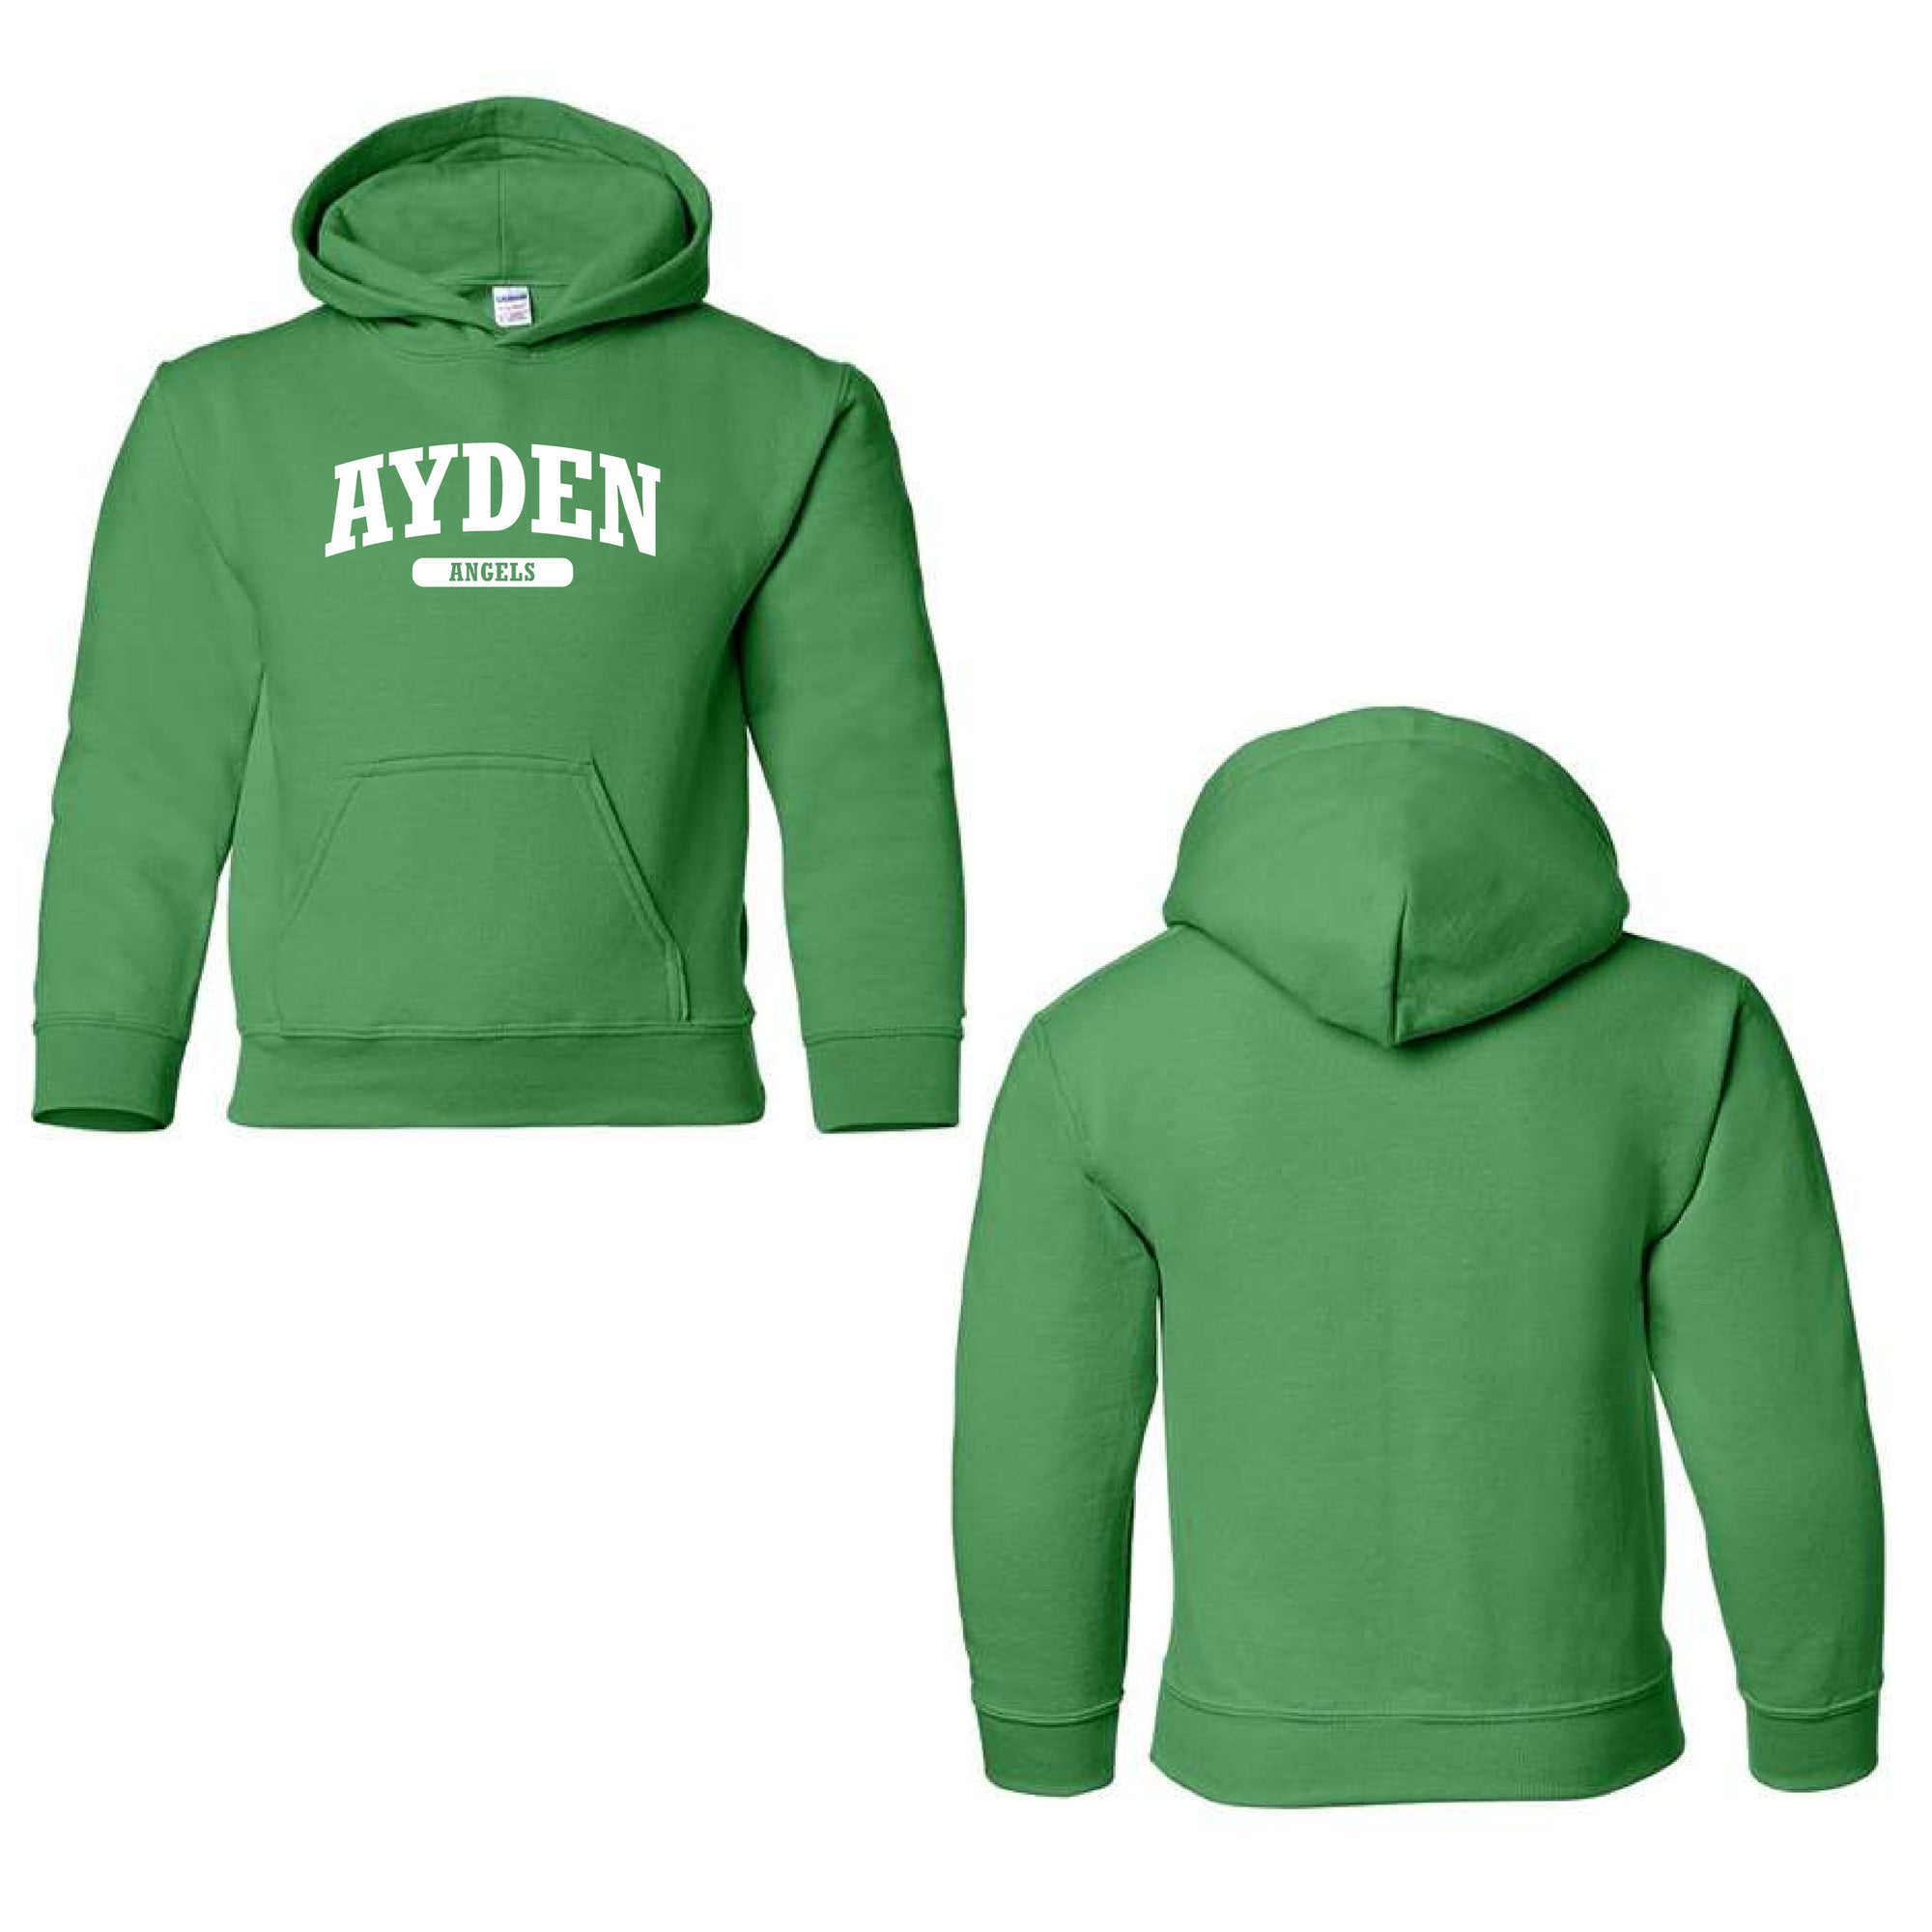 Ayden Angels Hooded Sweatshirt - Ayden Elementary